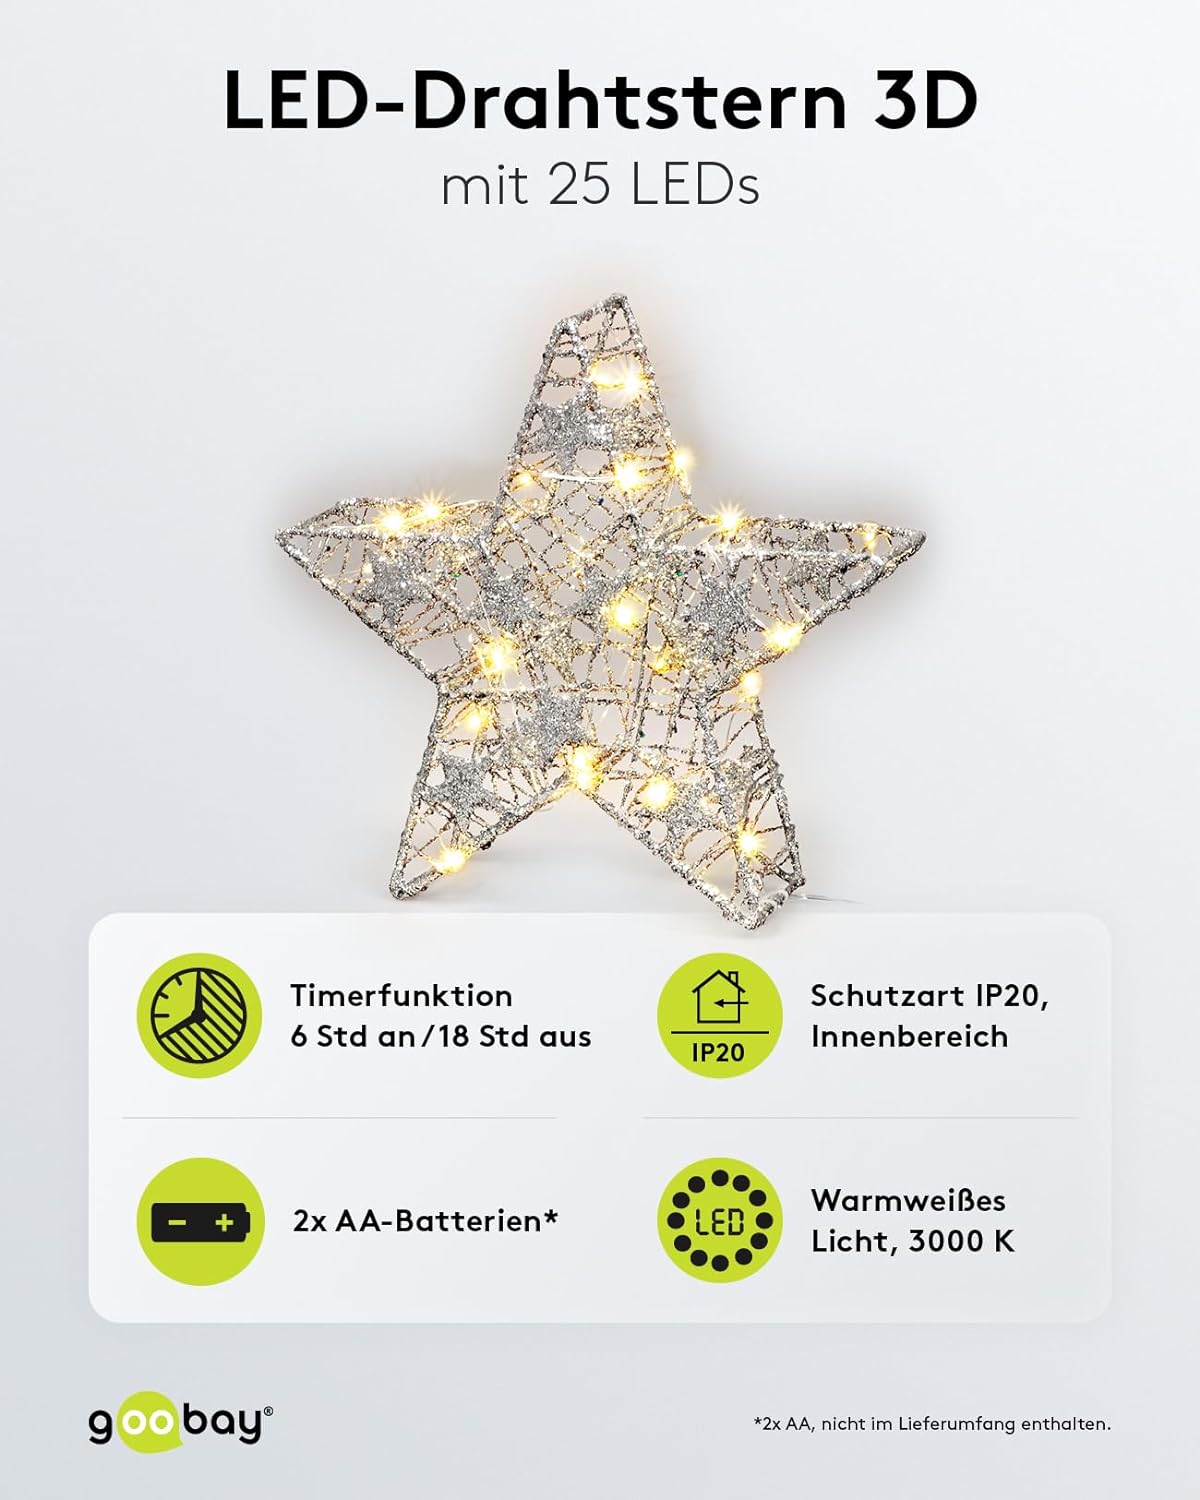 LED Drahtstern 3D / Weihnachtsdeko/Weihnachtsstern mit Timer/Integrierte LED Lichterkette/verwendbar als Tischlampe, Deko im Winter und Weihnachten/Beleuchtung batteriebetrieben